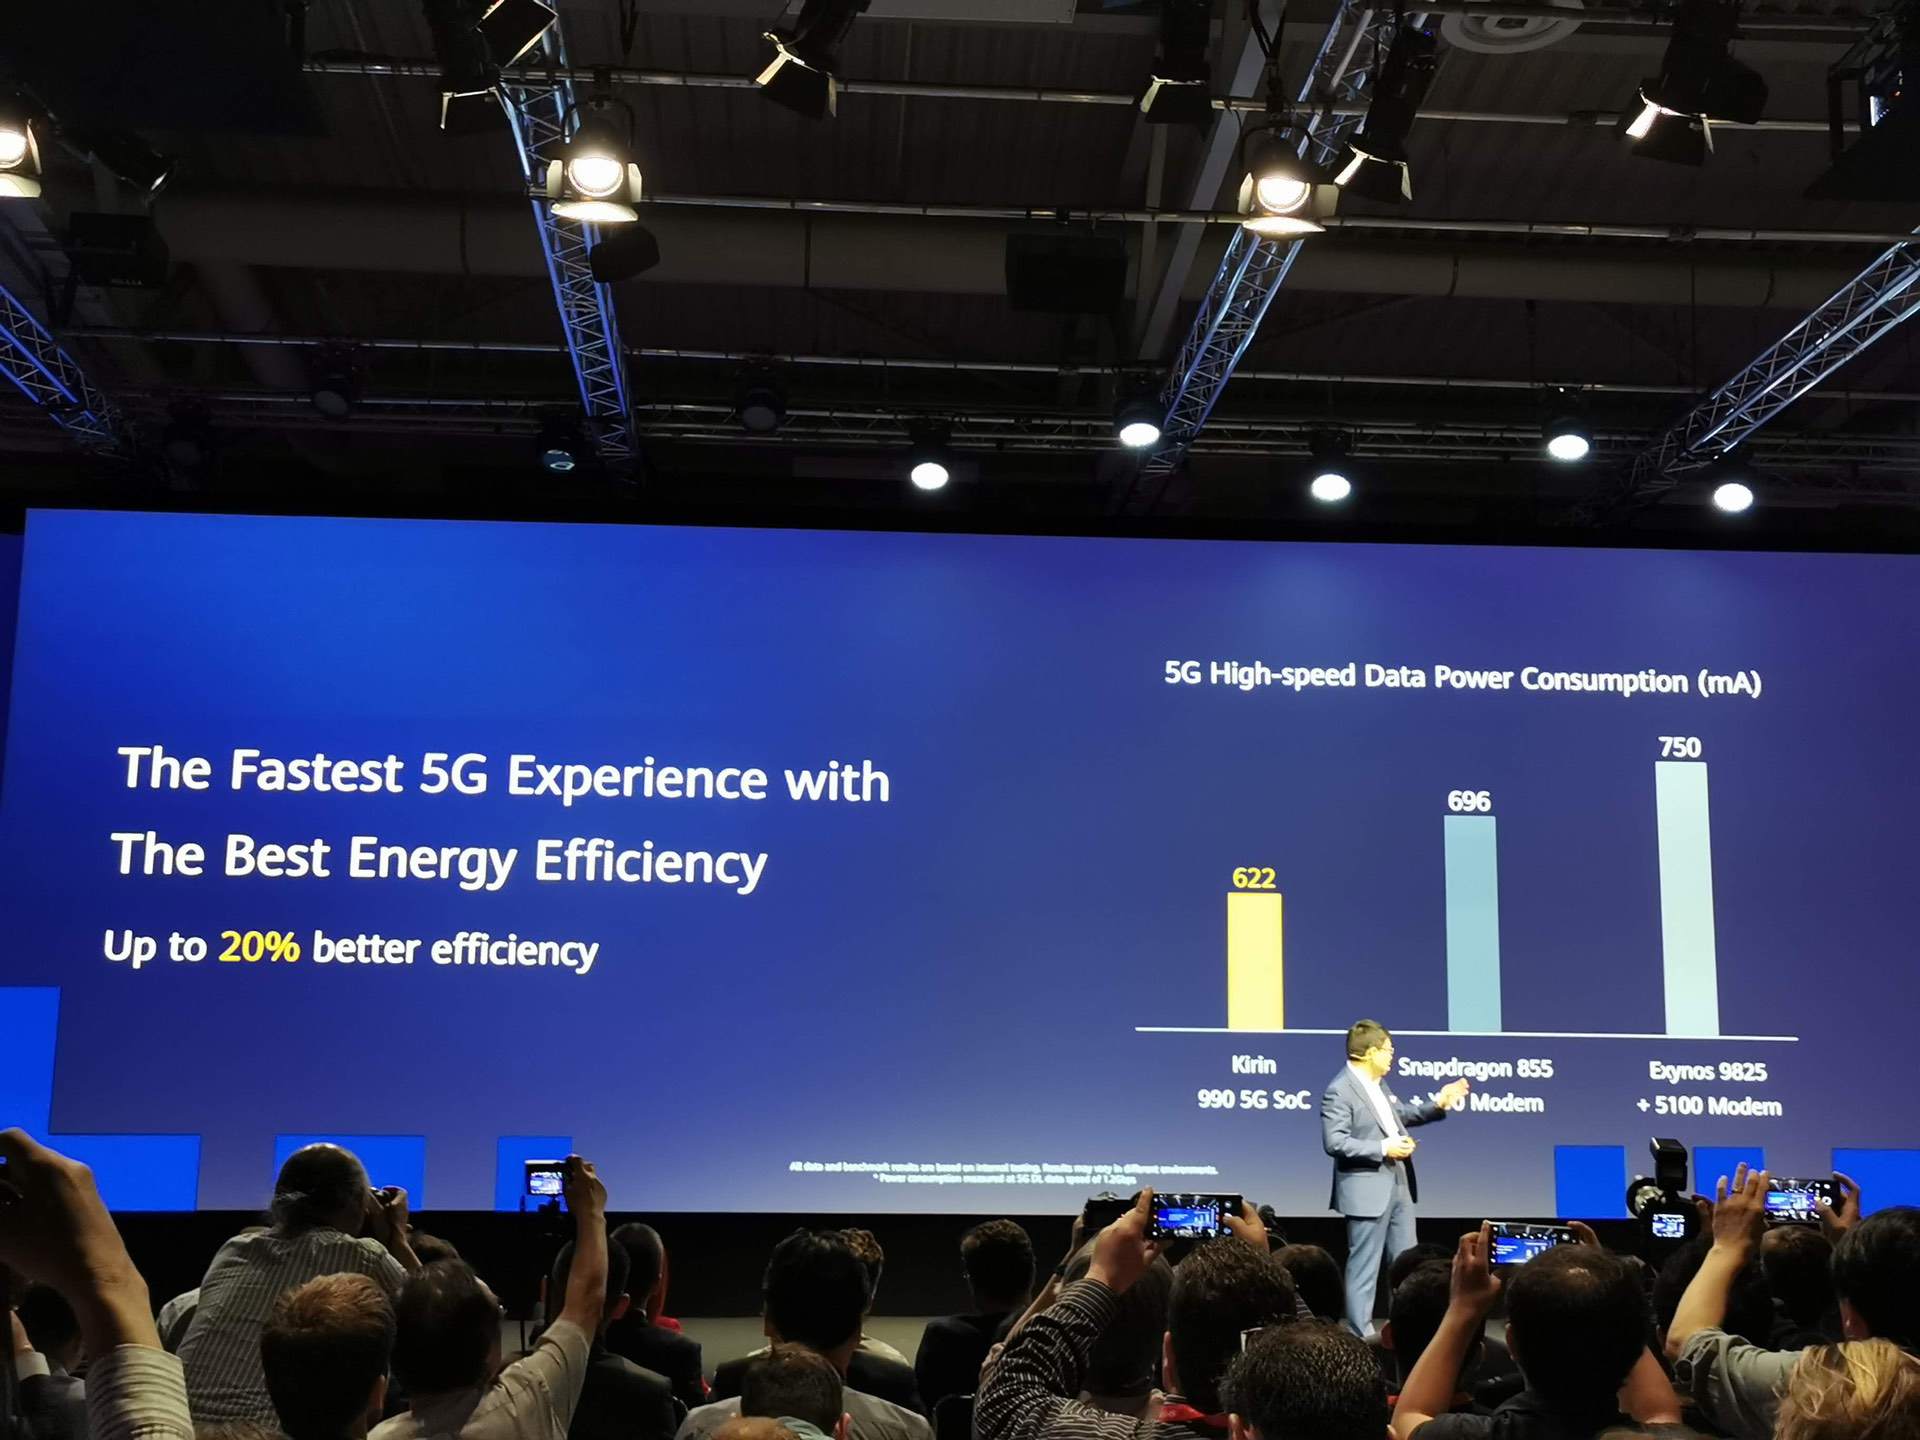 Kirin 990 5G – флагманский процессор Huawei с интегрированным чипом 5G, 10,3 млрд транзисторов и 16-ядерной графикой